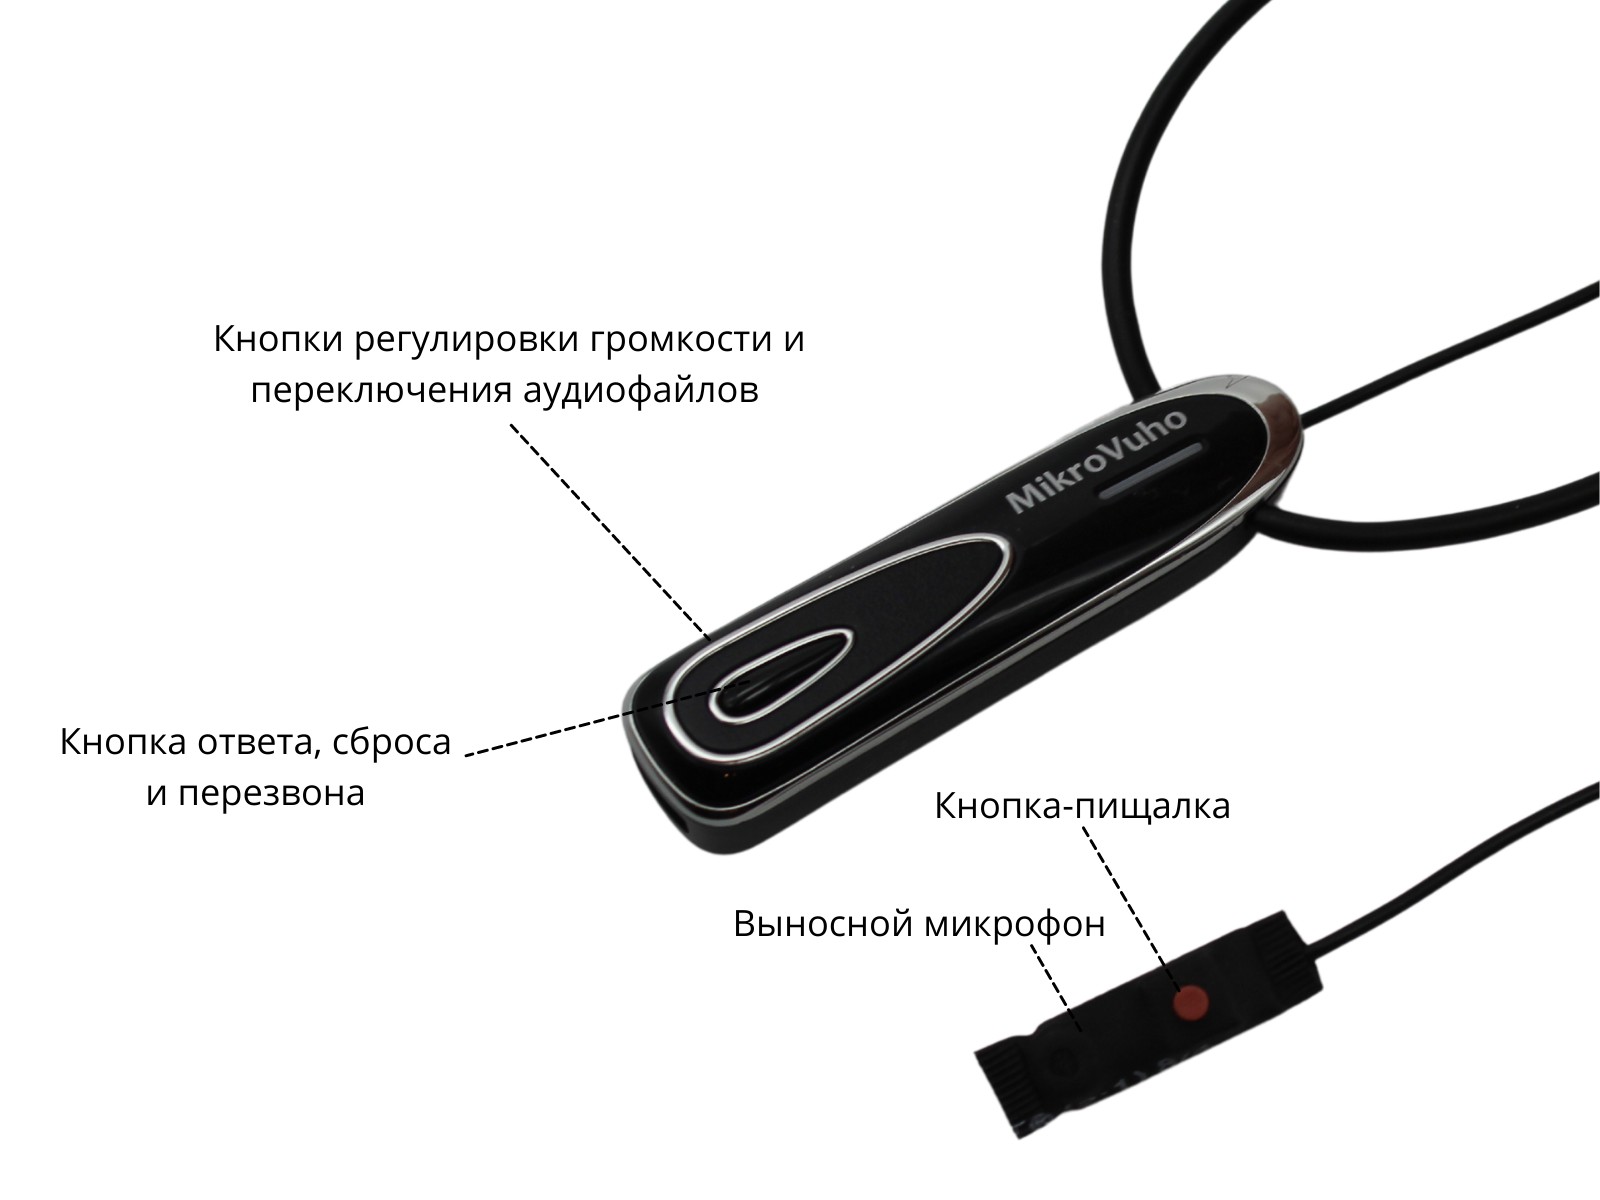 Универсальная гарнитура Bluetooth Premier с капсулой К5 4 мм и магнитами 2 мм 4